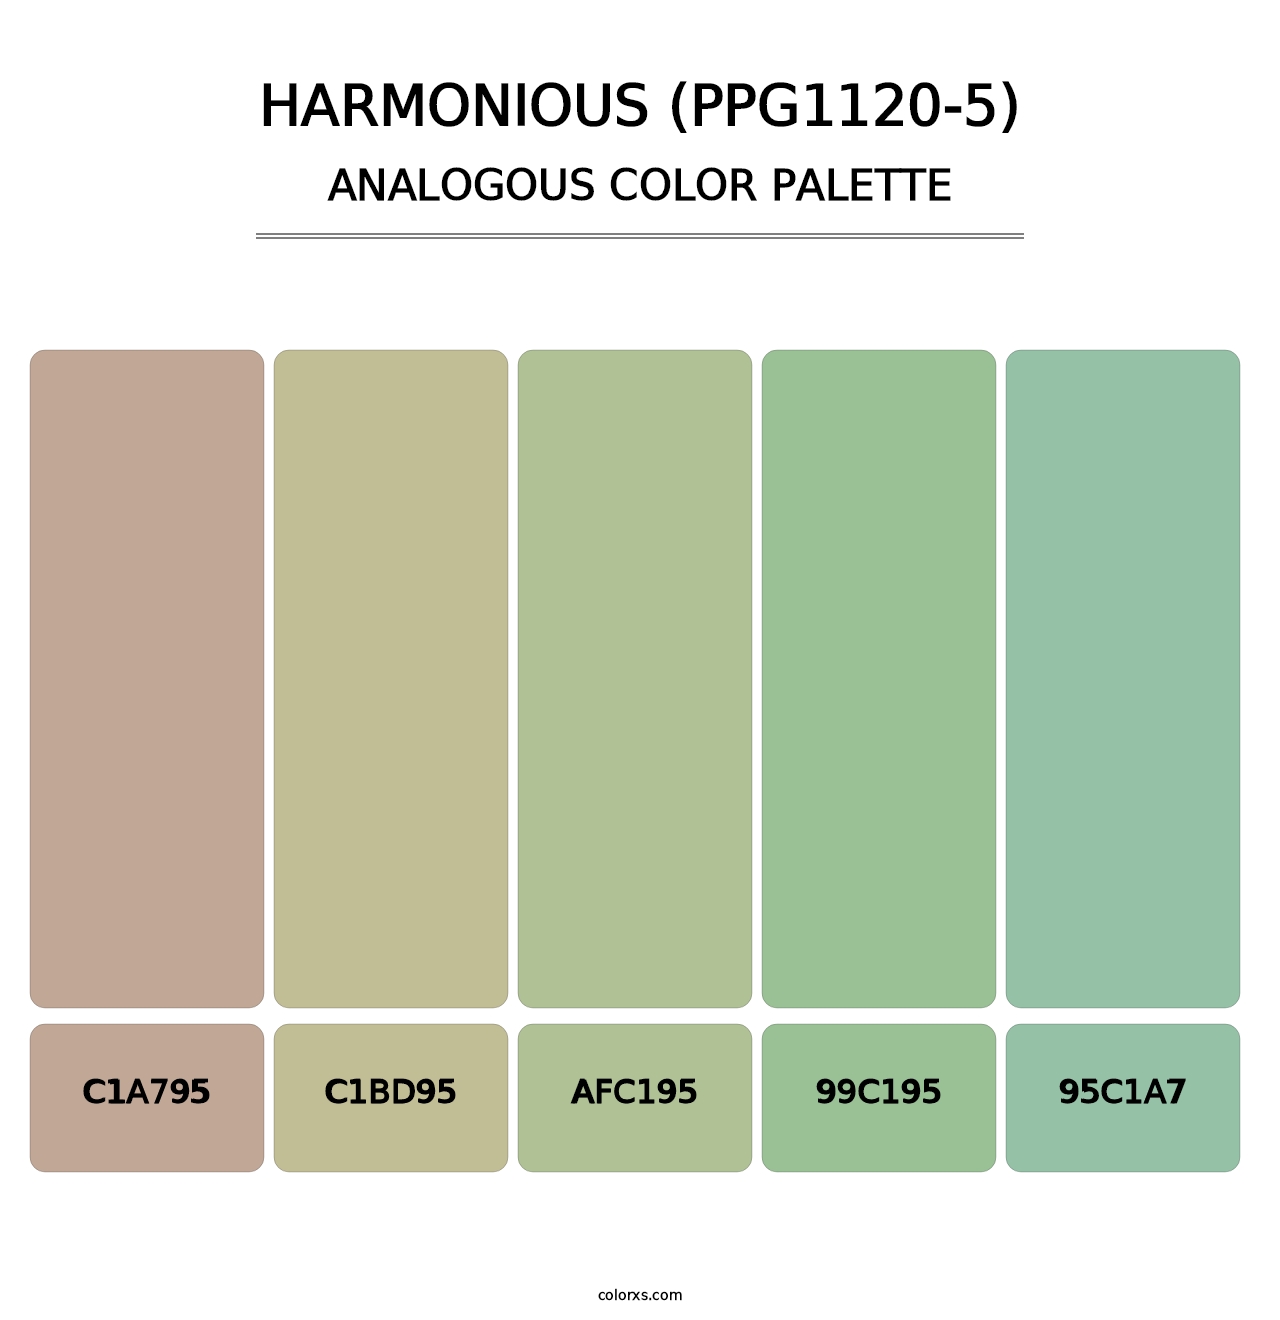 Harmonious (PPG1120-5) - Analogous Color Palette